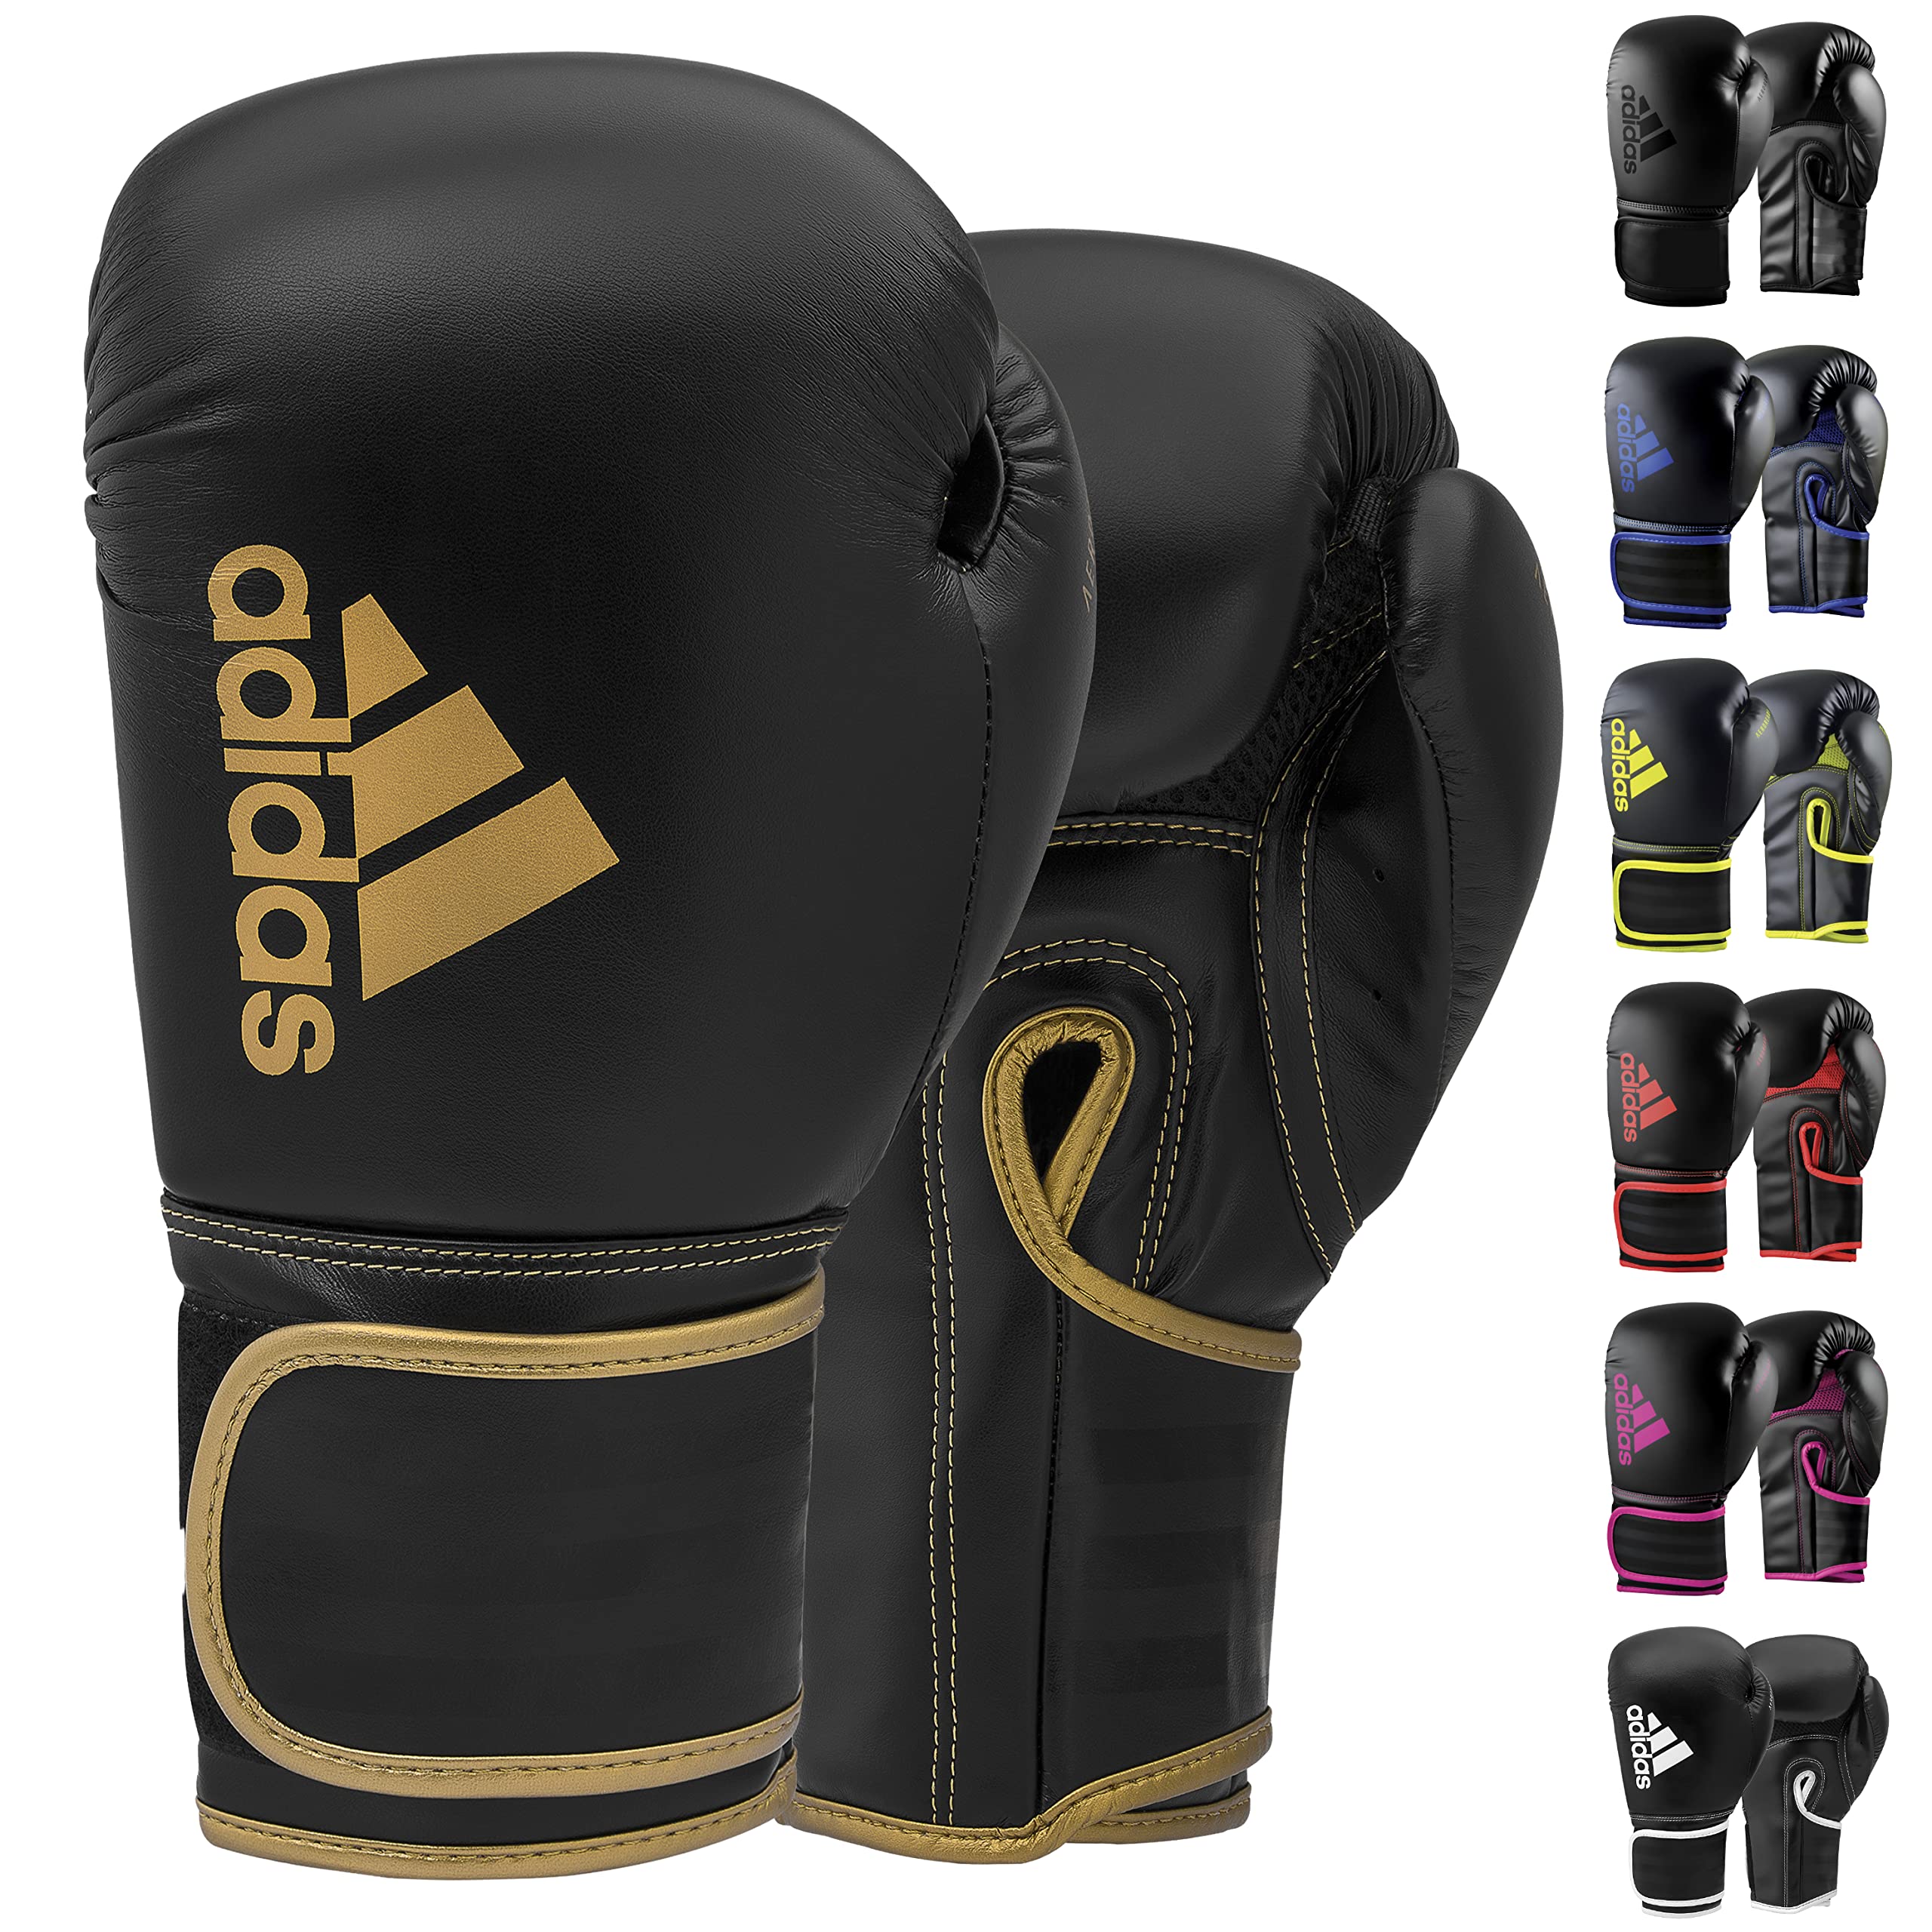 Kids - Kickboxing, MMA, Black/Gold Training Boxing Gloves - Women - Adidas for Men, & Fitness Boxing, Boxing 12oz 80 & Bag, for Hybrid Gloves